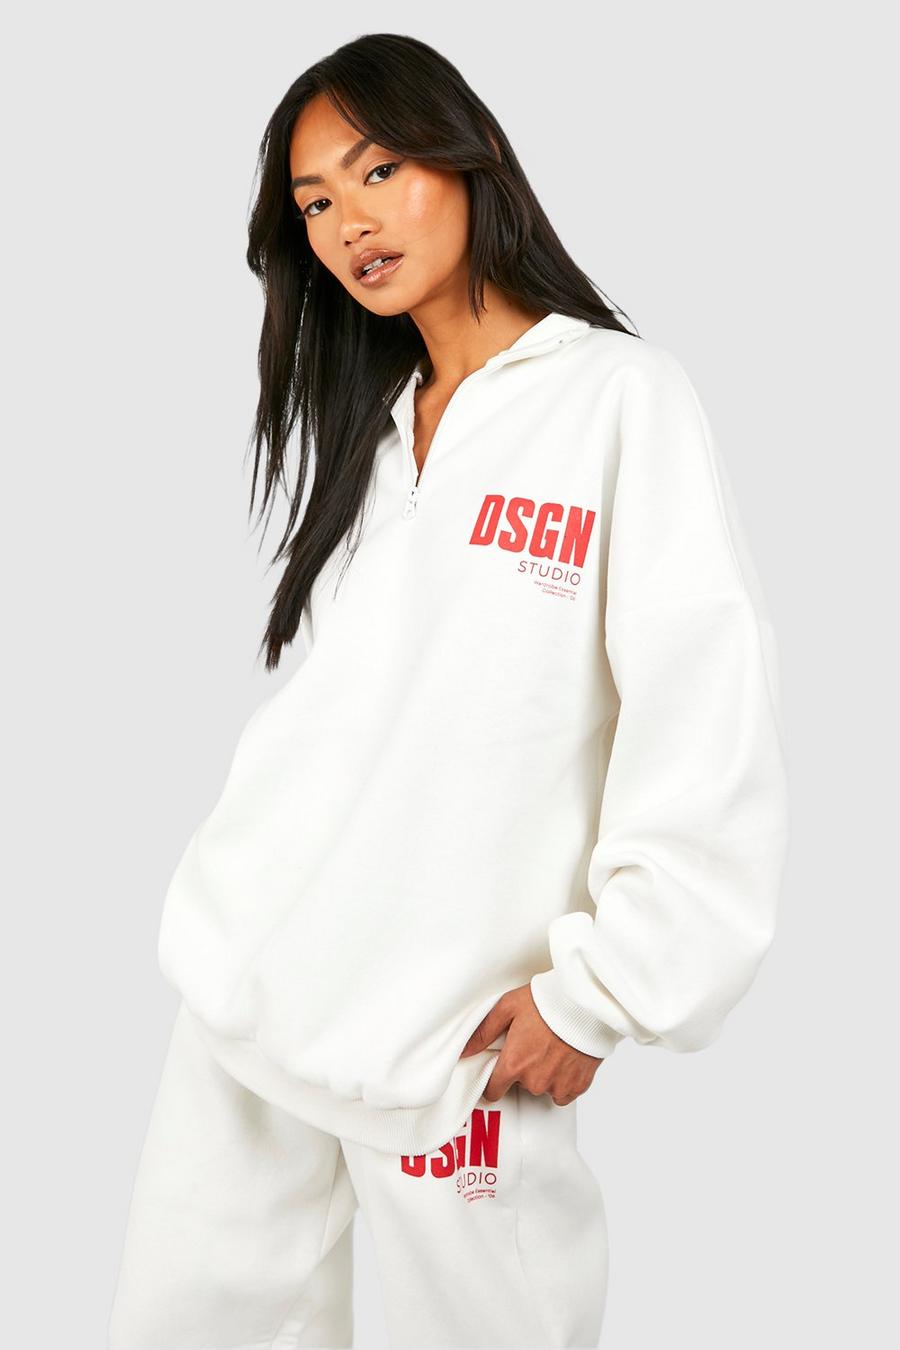 Oversize Sweatshirt mit Dsgn Studio Slogan und halbem Reißverschluss, Ecru